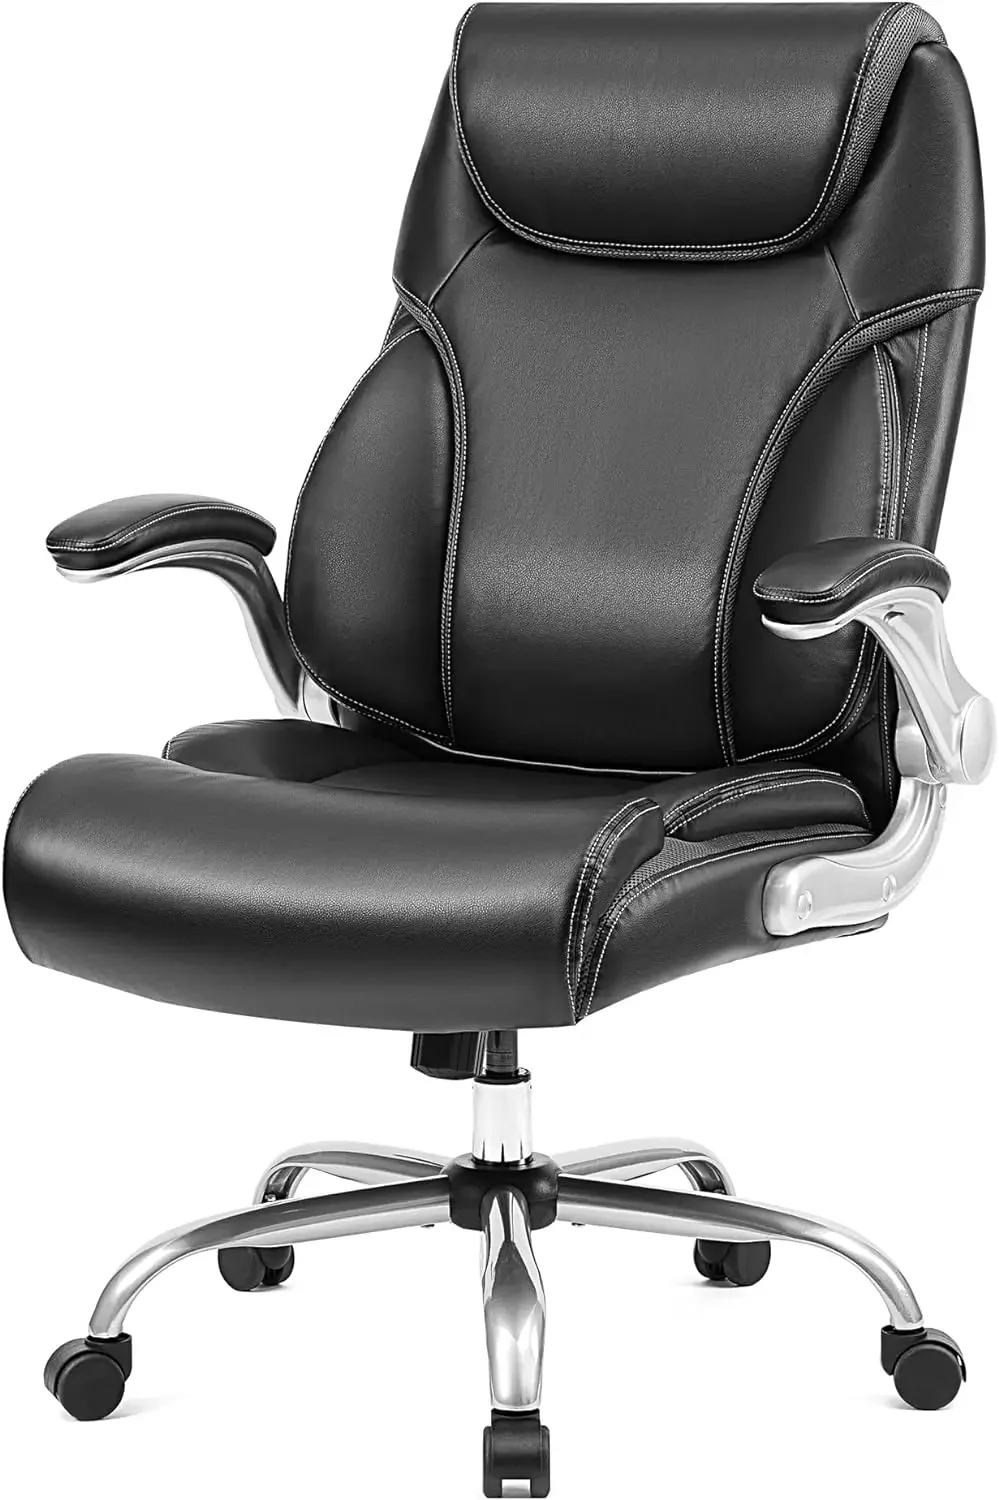 

Кожаное кресло руководителя с откидными ножками и грузоподъемностью 500 фунтов, регулируемые углы наклона, поворотный офисный стул